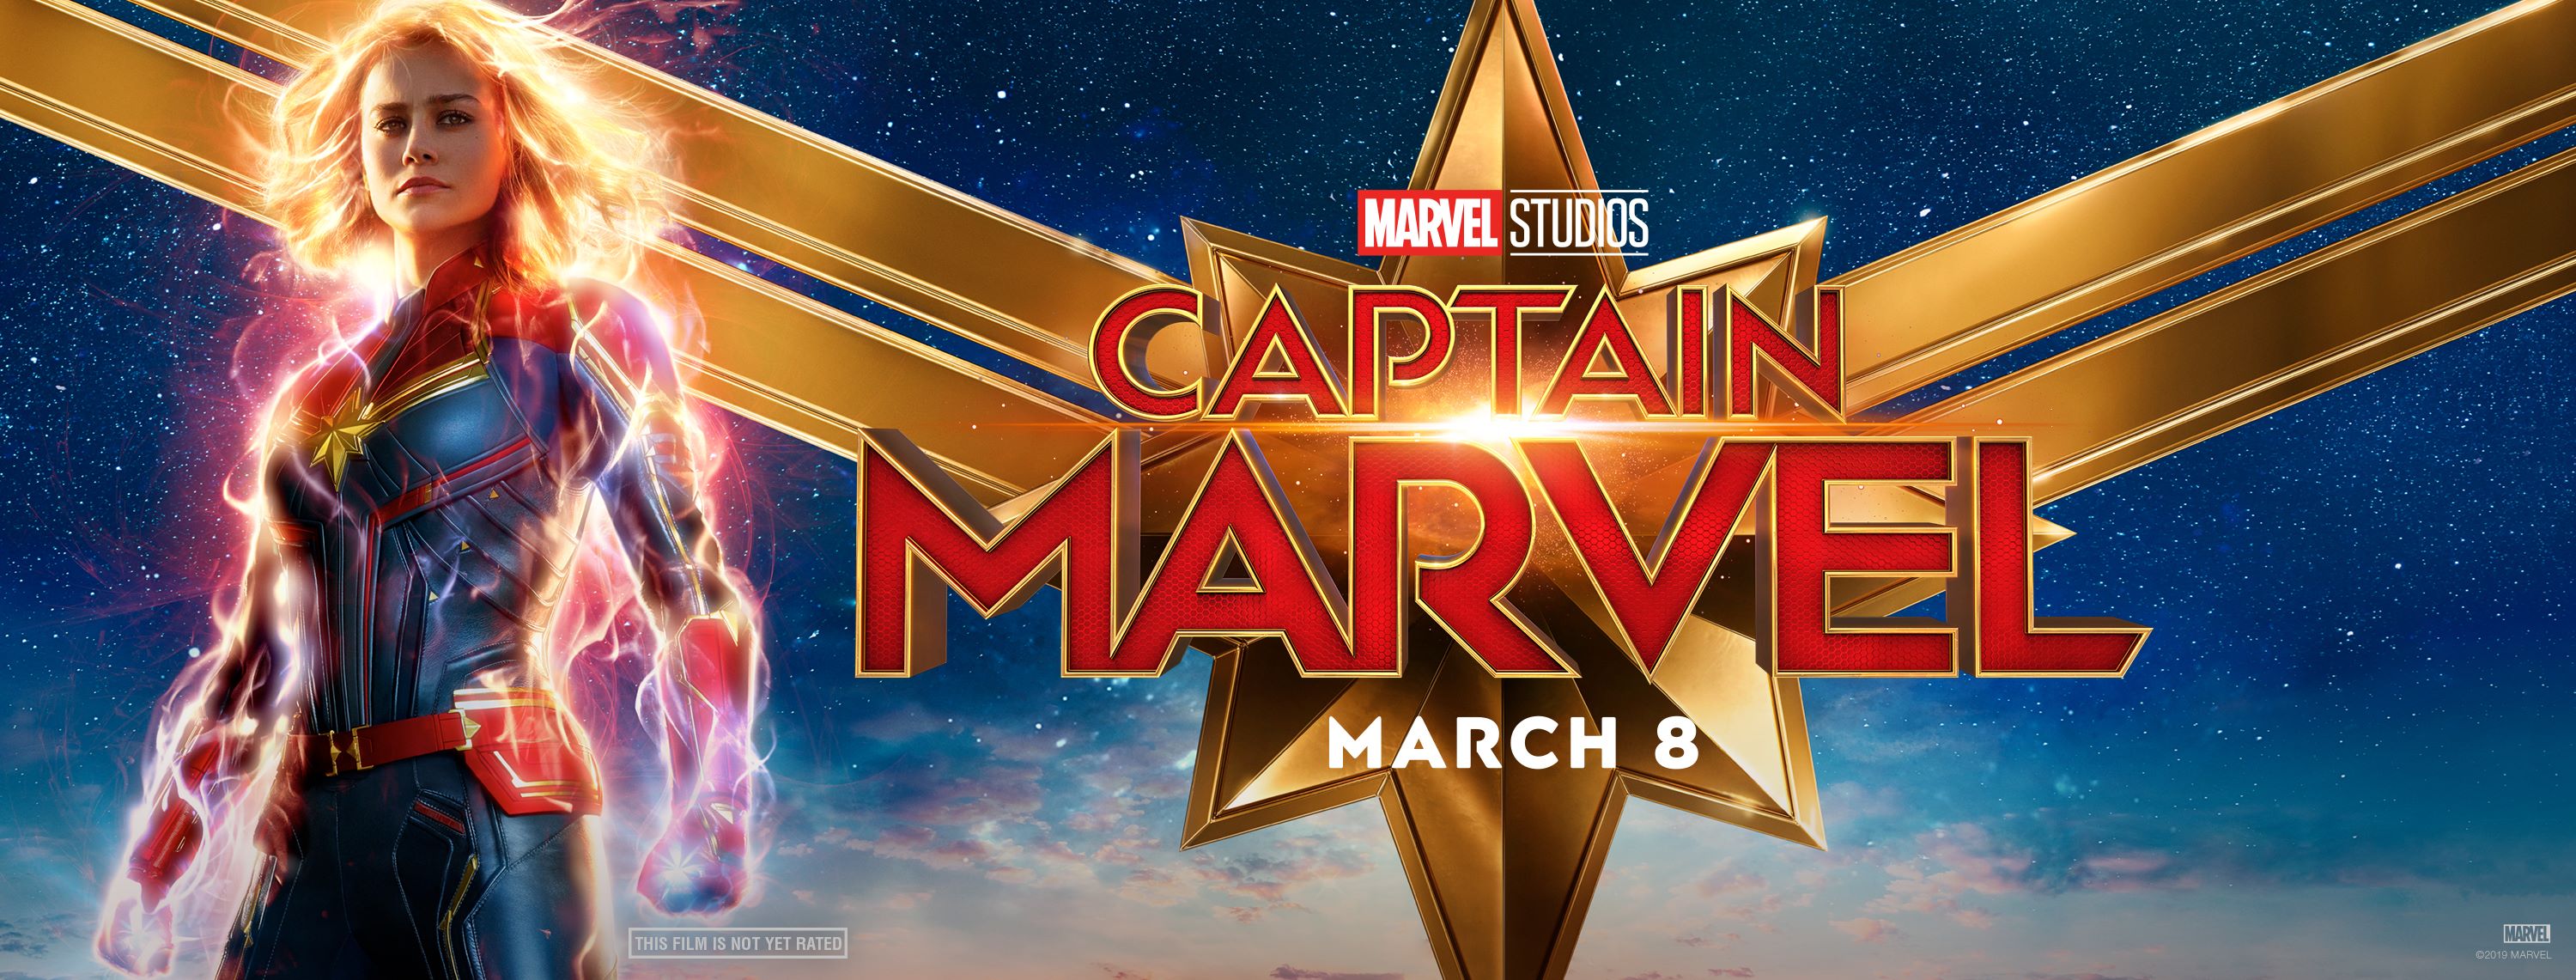 Выход капитана марвел. Капитан Марвел 2019. Капитан Марвел 16+. Капитан Марвел 2 Постер.